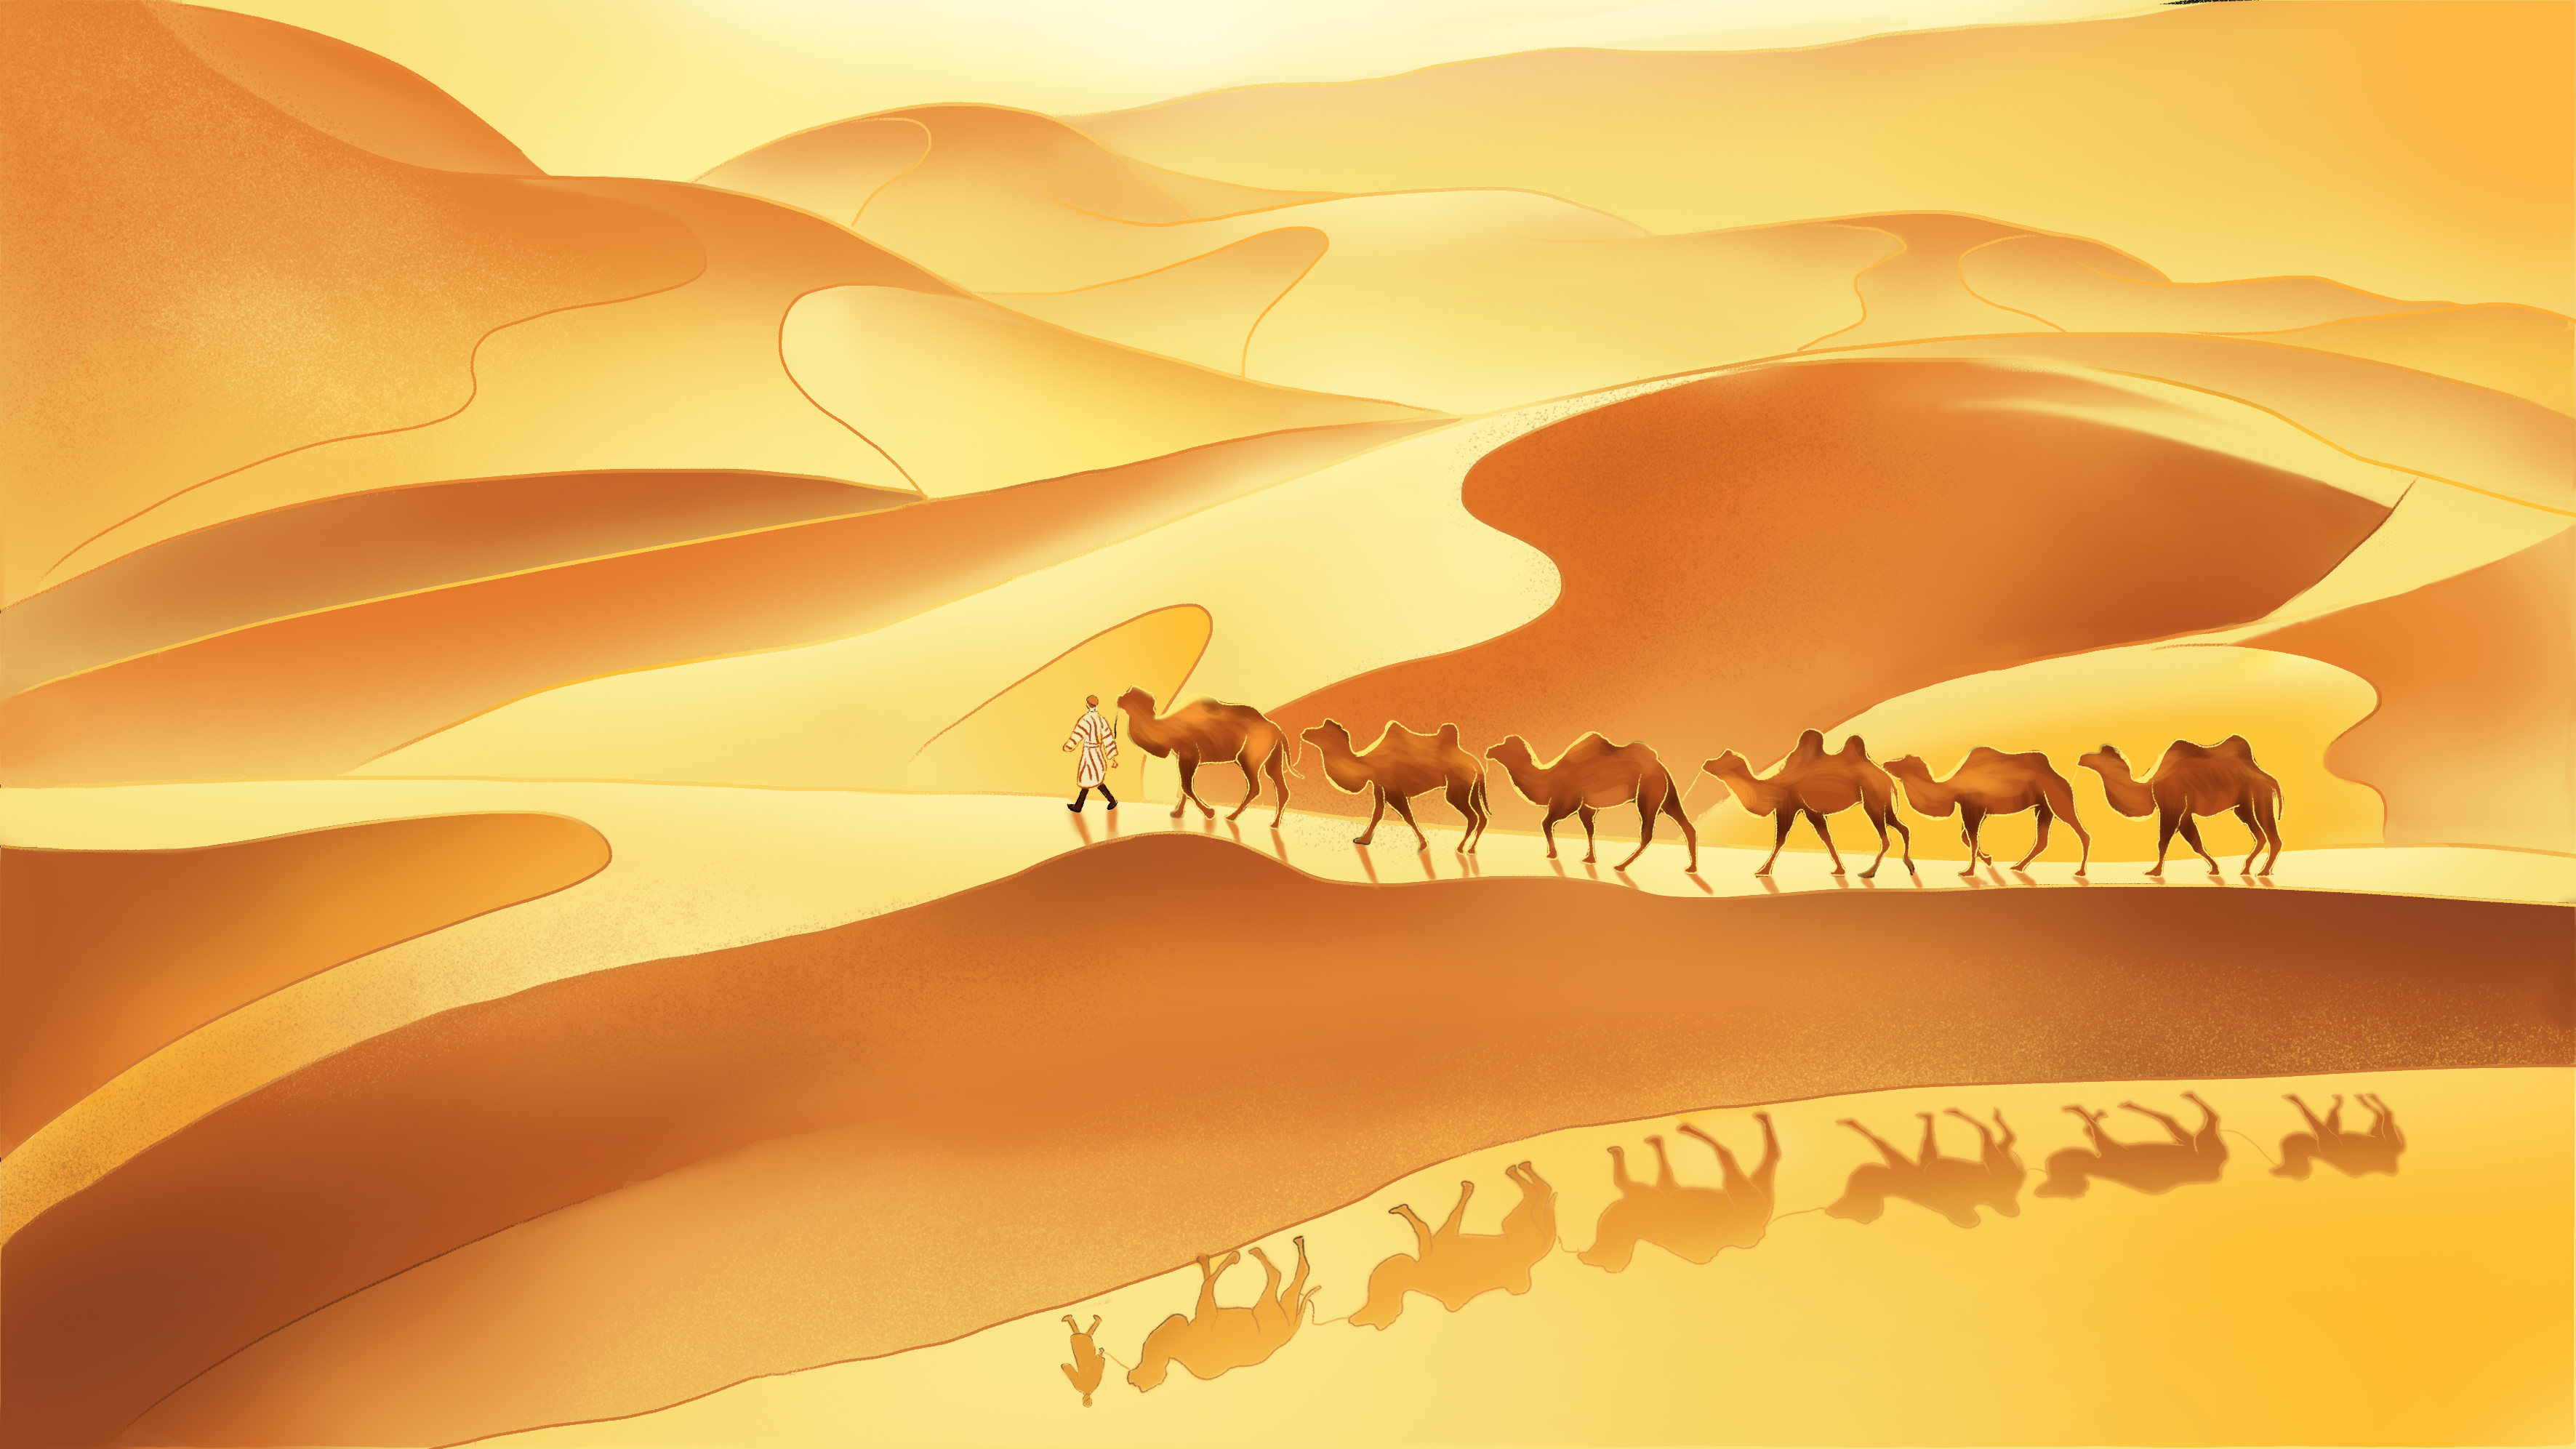 敦煌沙漠骆驼丝绸之路插画